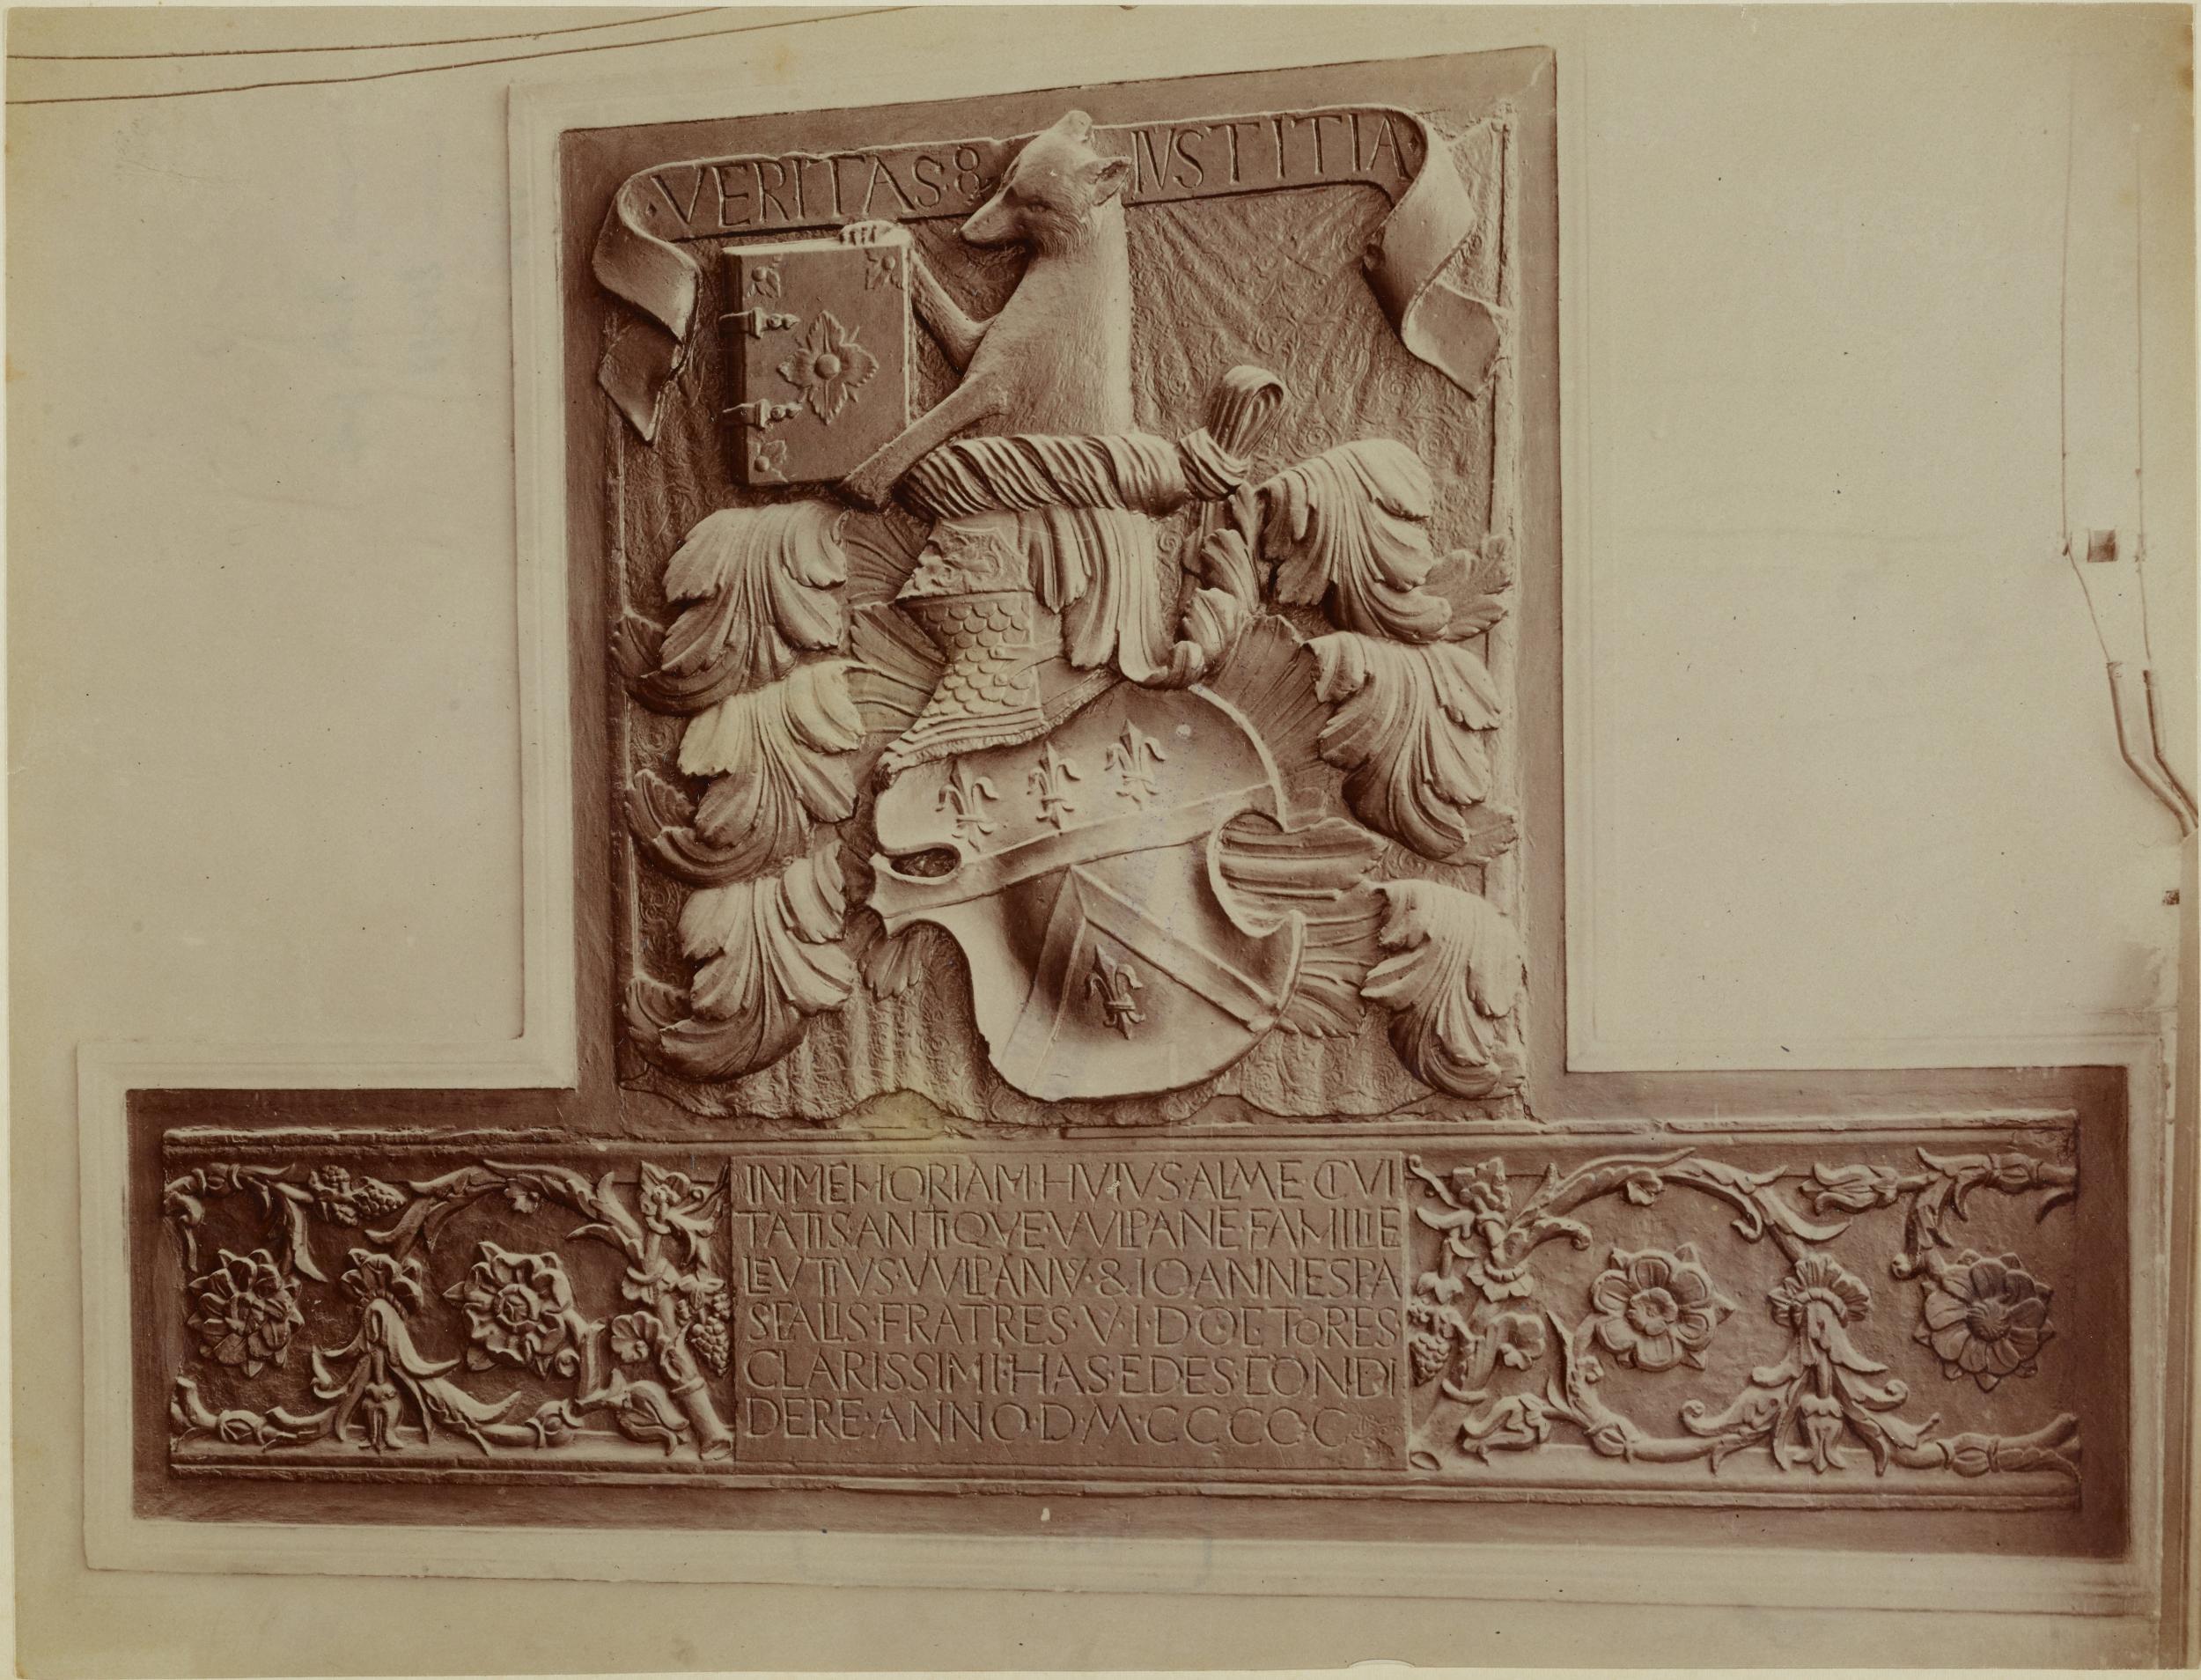 Fotografo non identificato, Bitonto - Palazzo Sylos-Labini già Vulpano, stemma con epigrafe dei Vulpano - facciata principale, 1891-1910, albumina/carta, MPI137918